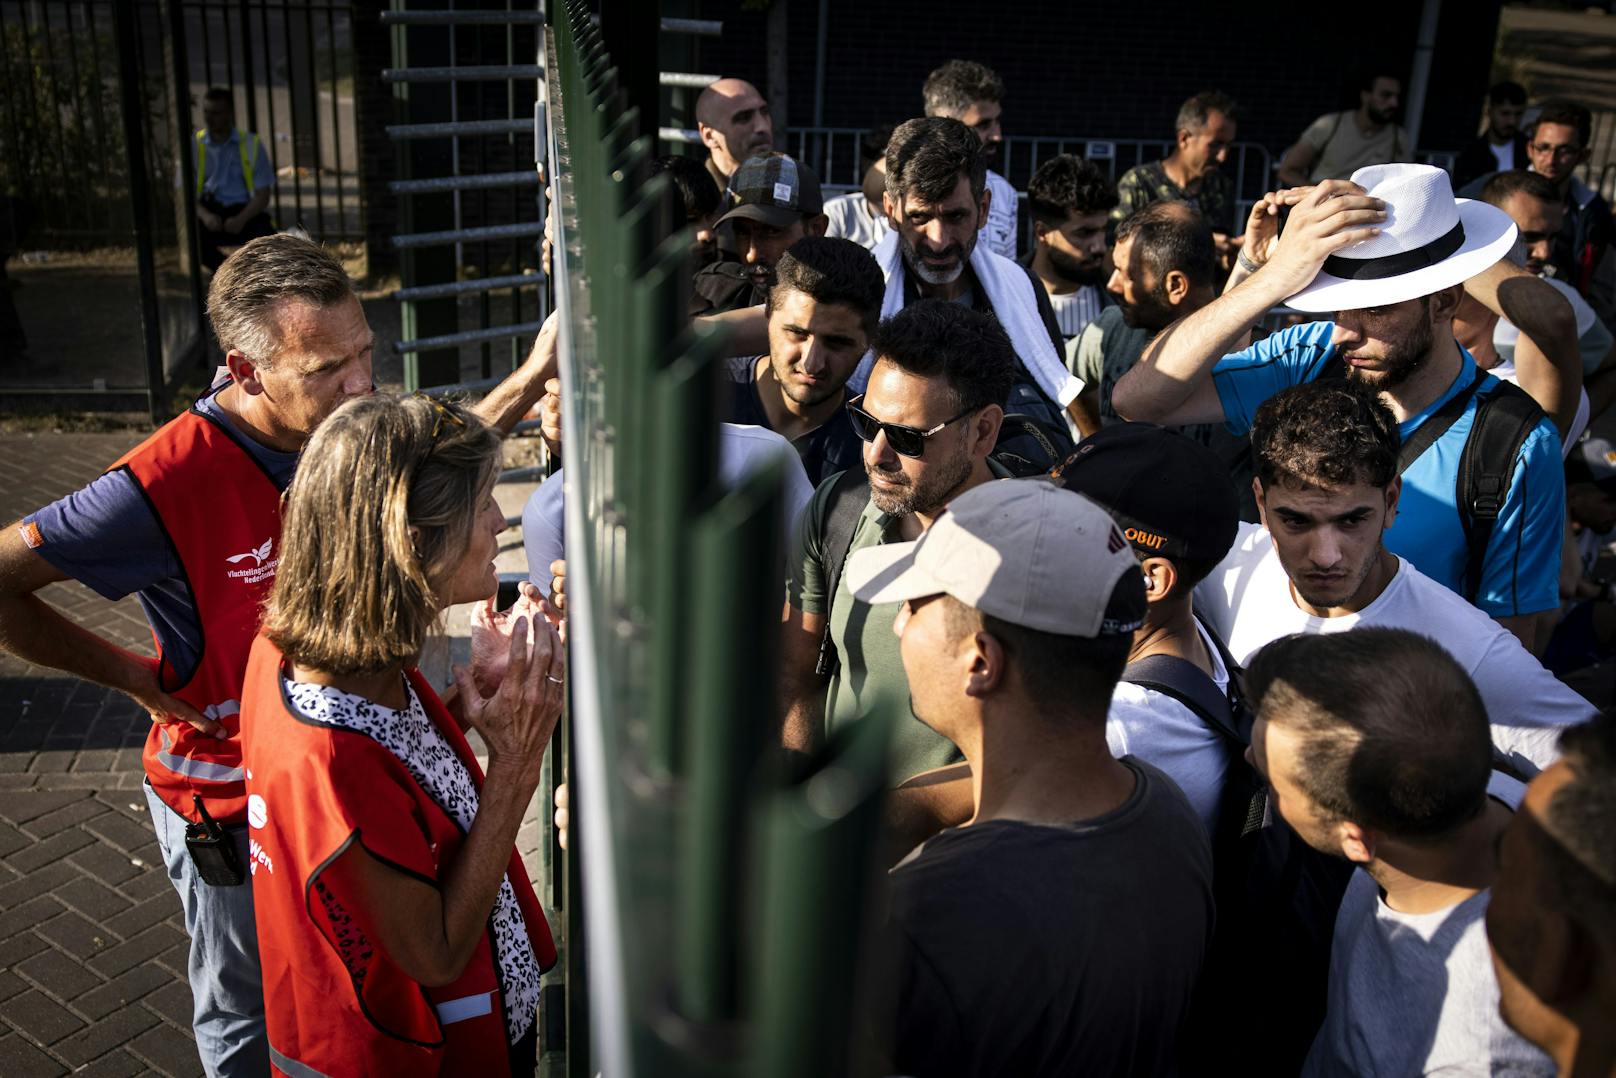 13.08.22: Asylsuchenden im Einsatzzentrum wird durch den Zaun mitgeteilt, dass sie in der nächsten Nacht draußen schlafen müssen, weil kein Transfer in reguläre oder Notunterkünfte möglich ist.